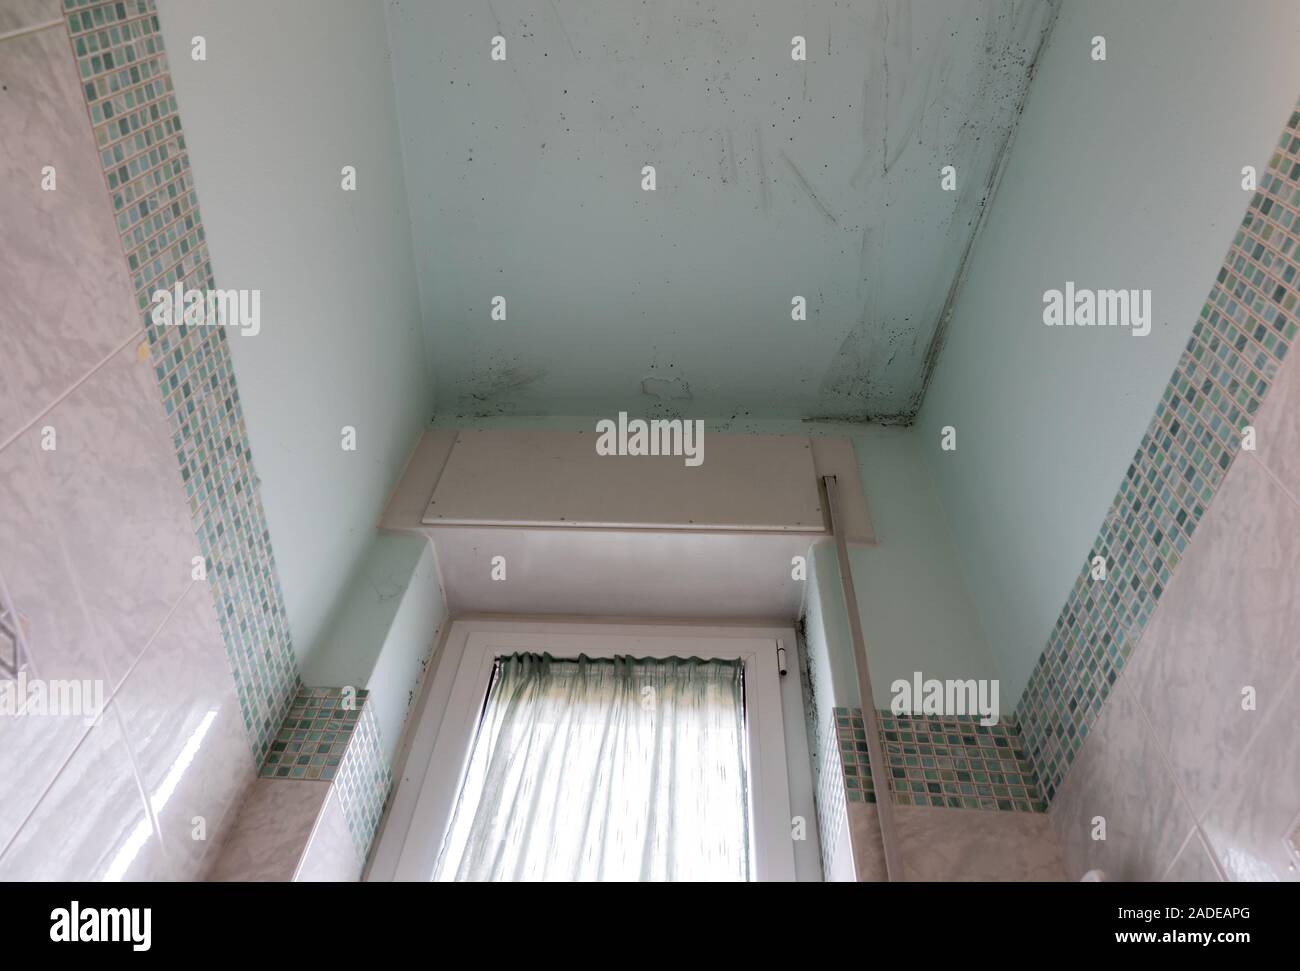 Schimmel an den Wänden im Bad, die durch den Dampf gebildet wird Stockfoto